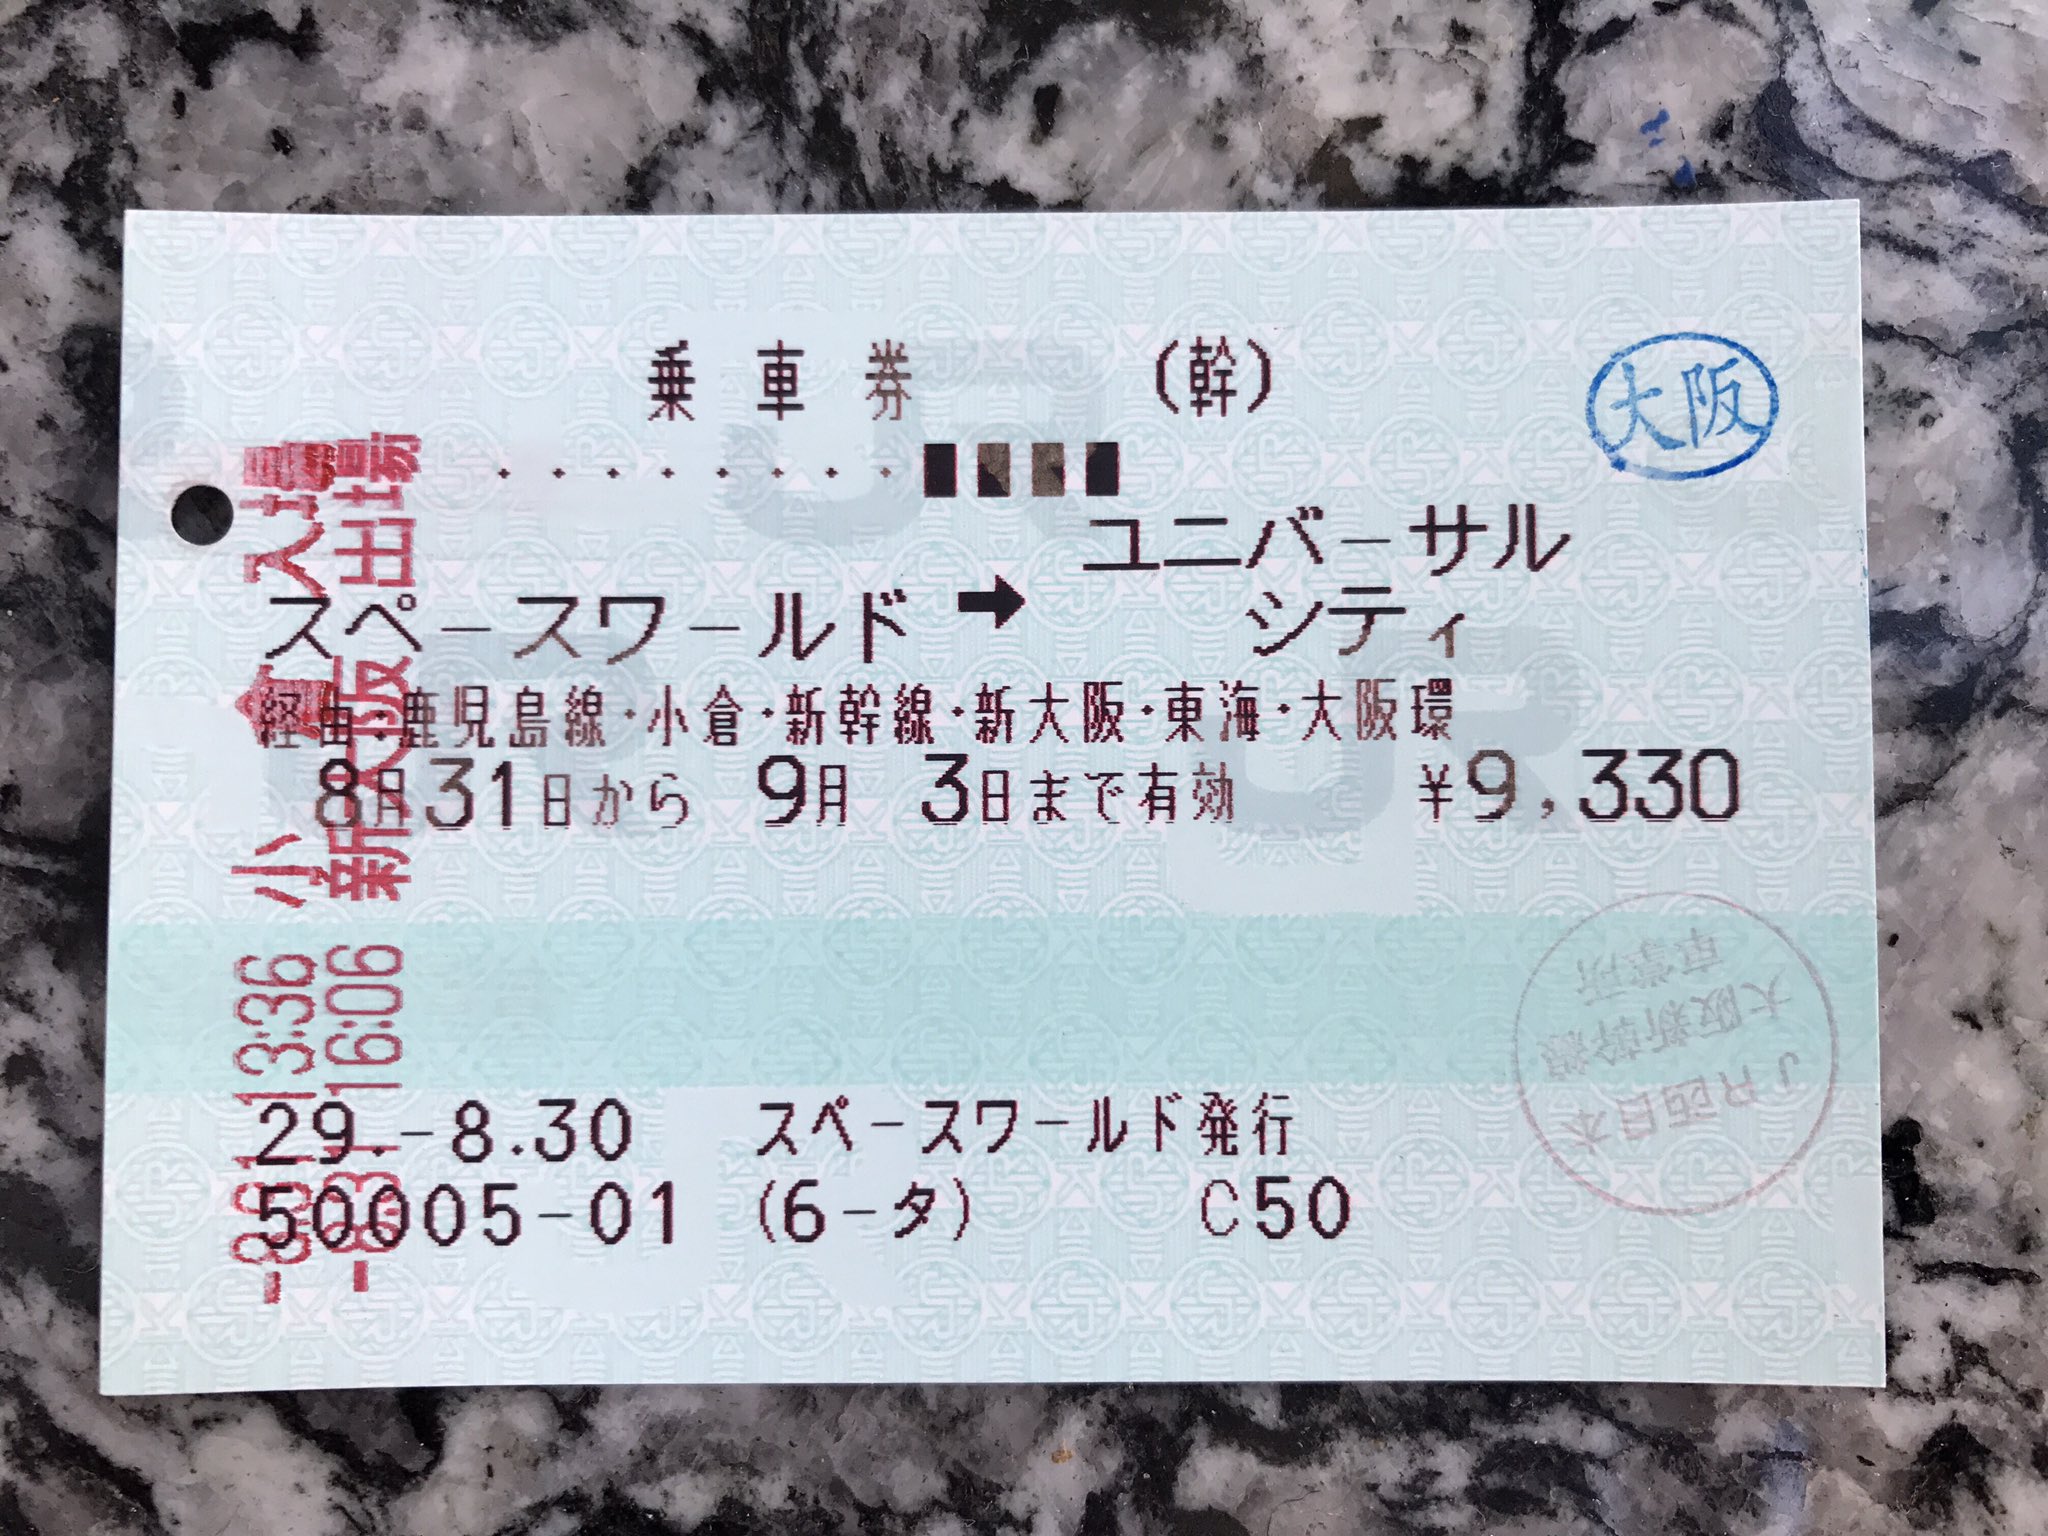 Yasui Toshiaki スペースワールドからユニバーサルシティまでの切符で大阪まで来ました 普通この区間の切符を買うと 北九州市内から大阪市内までとなって大阪市内は途中下車できないけど 大阪駅で途中下車できた 長年鉄道で旅行しているけど この